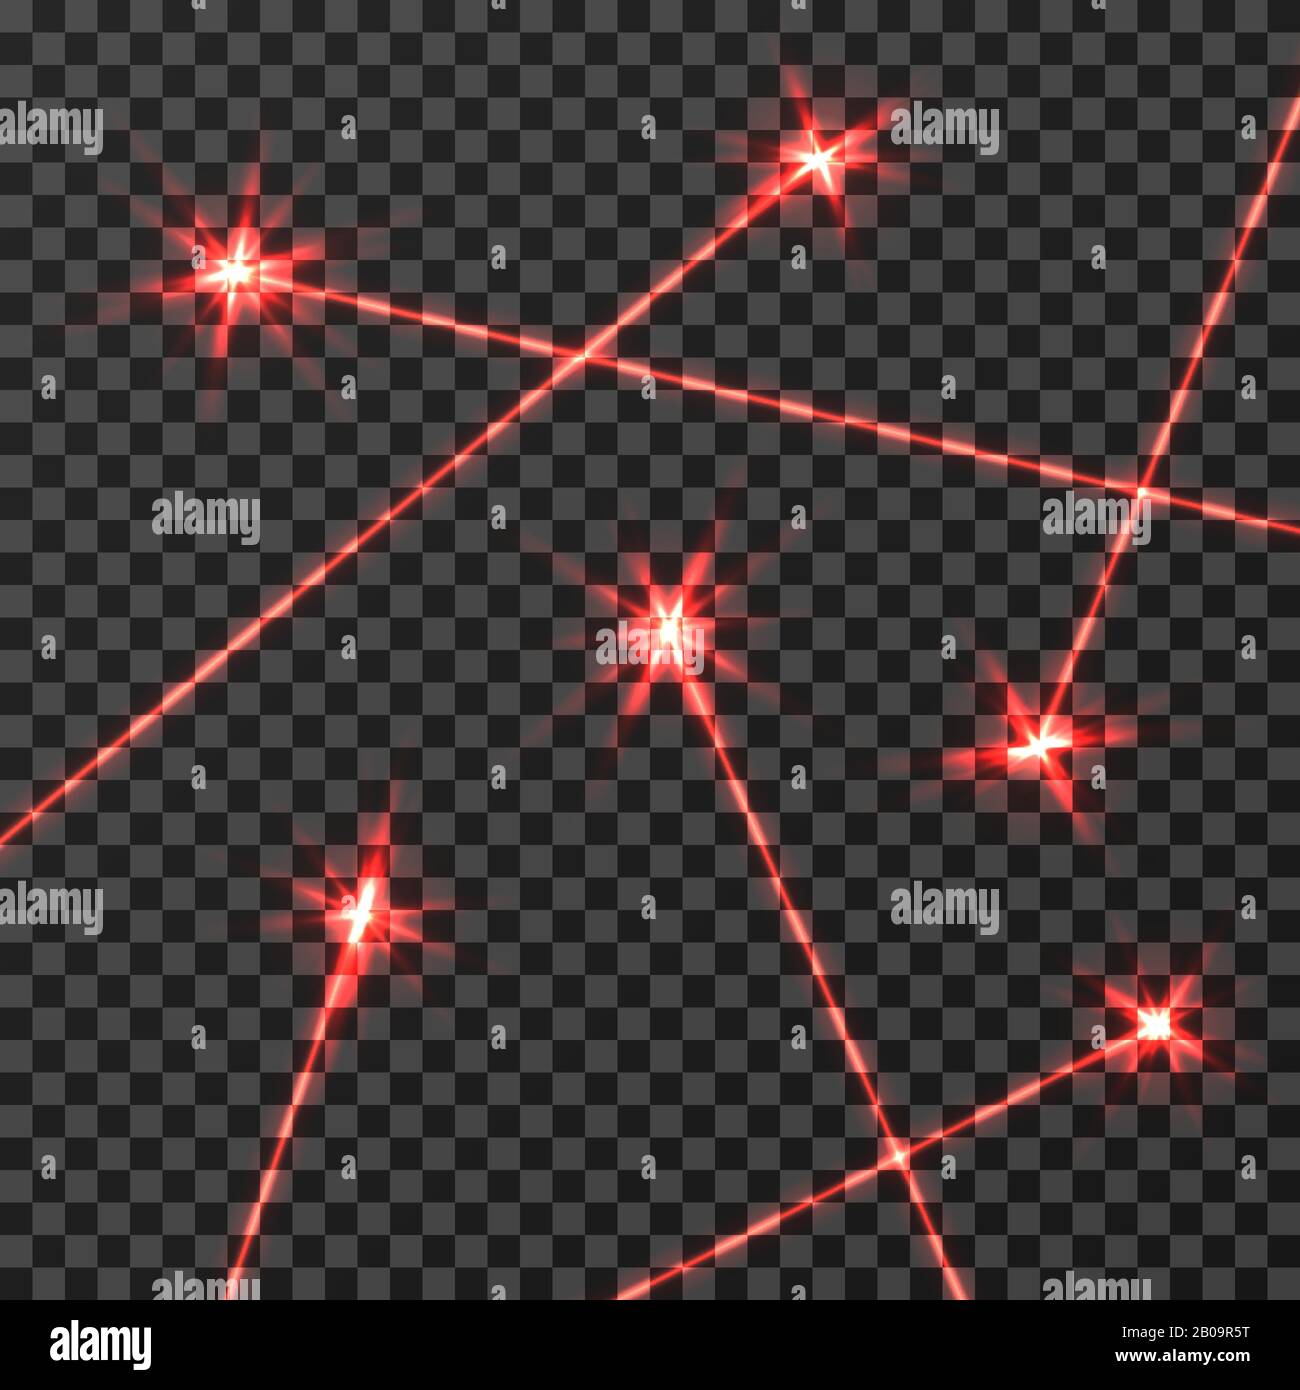 Roter Laserstrahl Vektor-Lichteffekt isoliert auf transparentem kariertem Hintergrund. Neon mit rotem Lichtstrahl, Abbildung des Technologiestrahllinieneffekts Stock Vektor